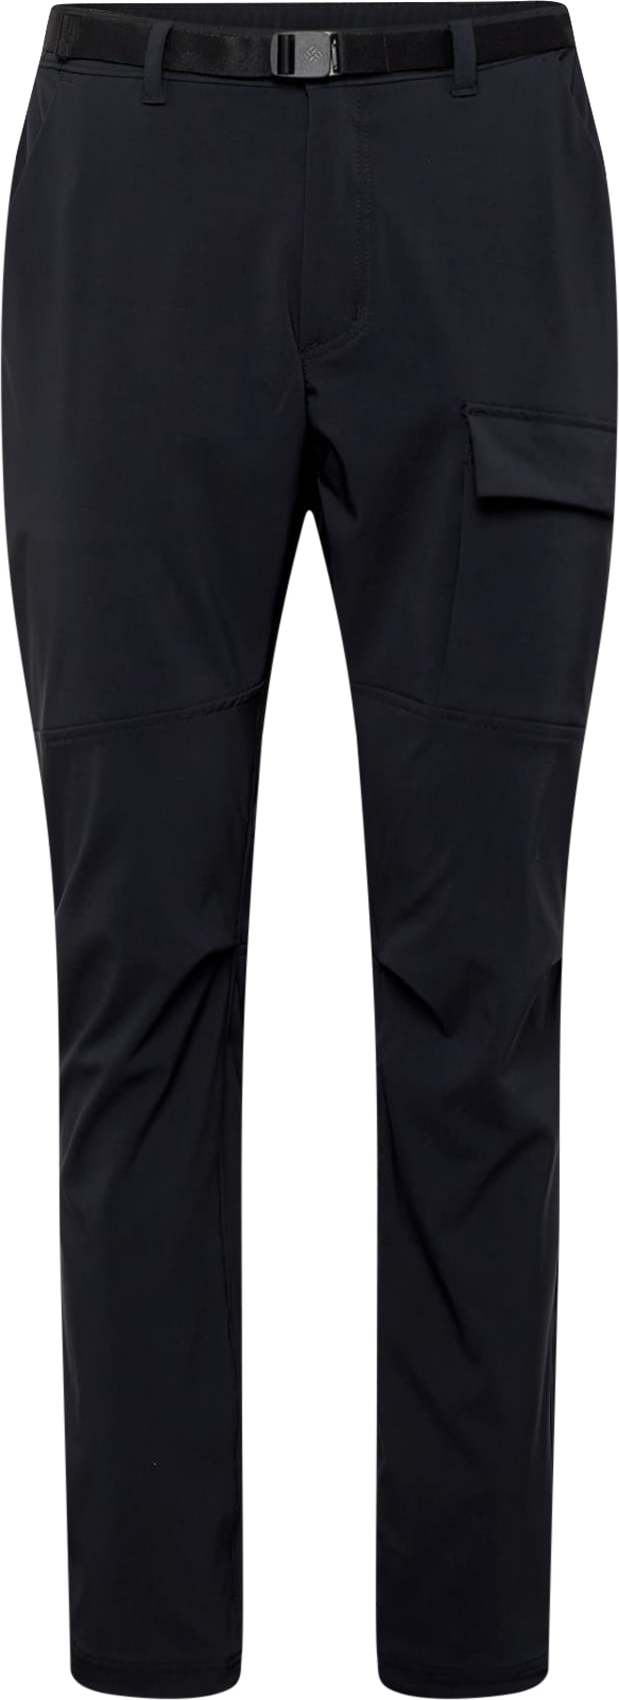 Outdoorové kalhoty 'Maxtrail' Columbia černá / bílá